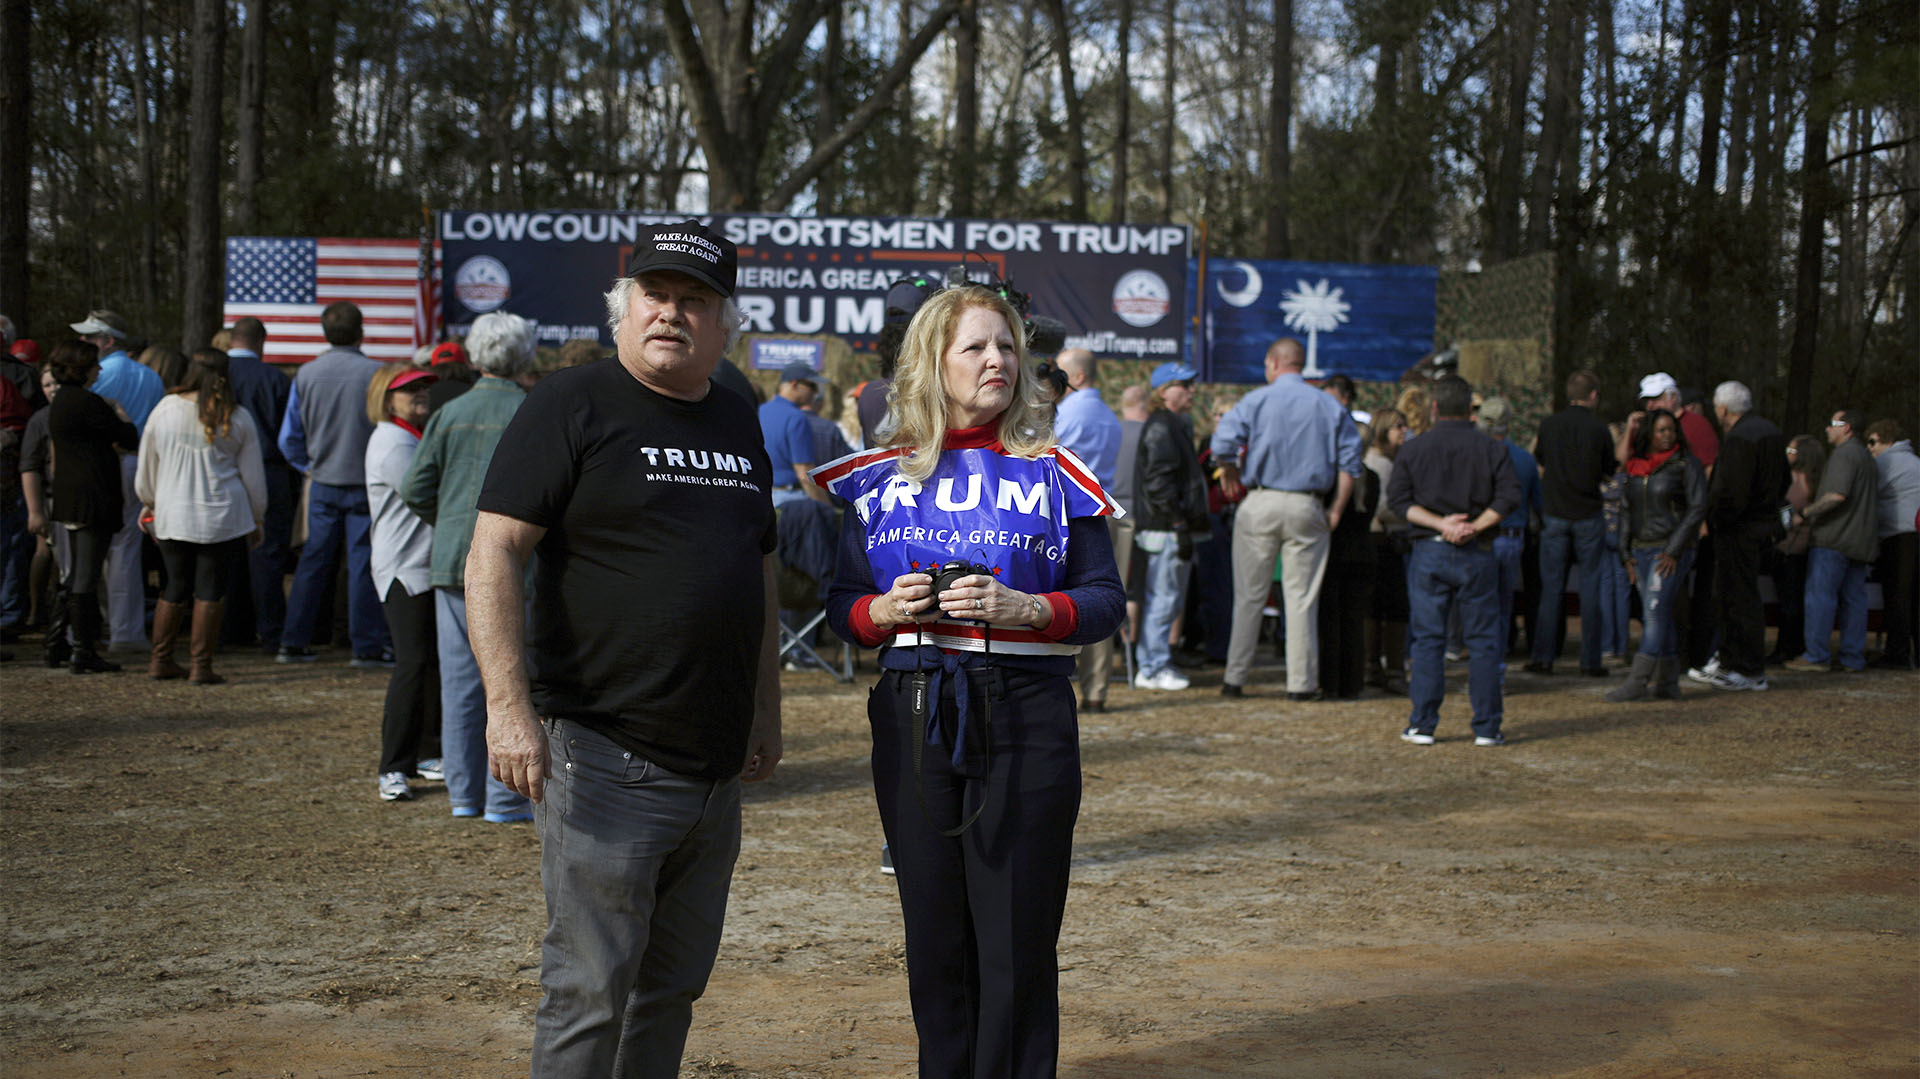 Dos seguidores esperan el inicio de un acto de campaña de Donald Trump en una granja en Walterboro, Carolina del Sur, el 17 de febrero de 2016 (Luke Sharrett/Bloomberg)